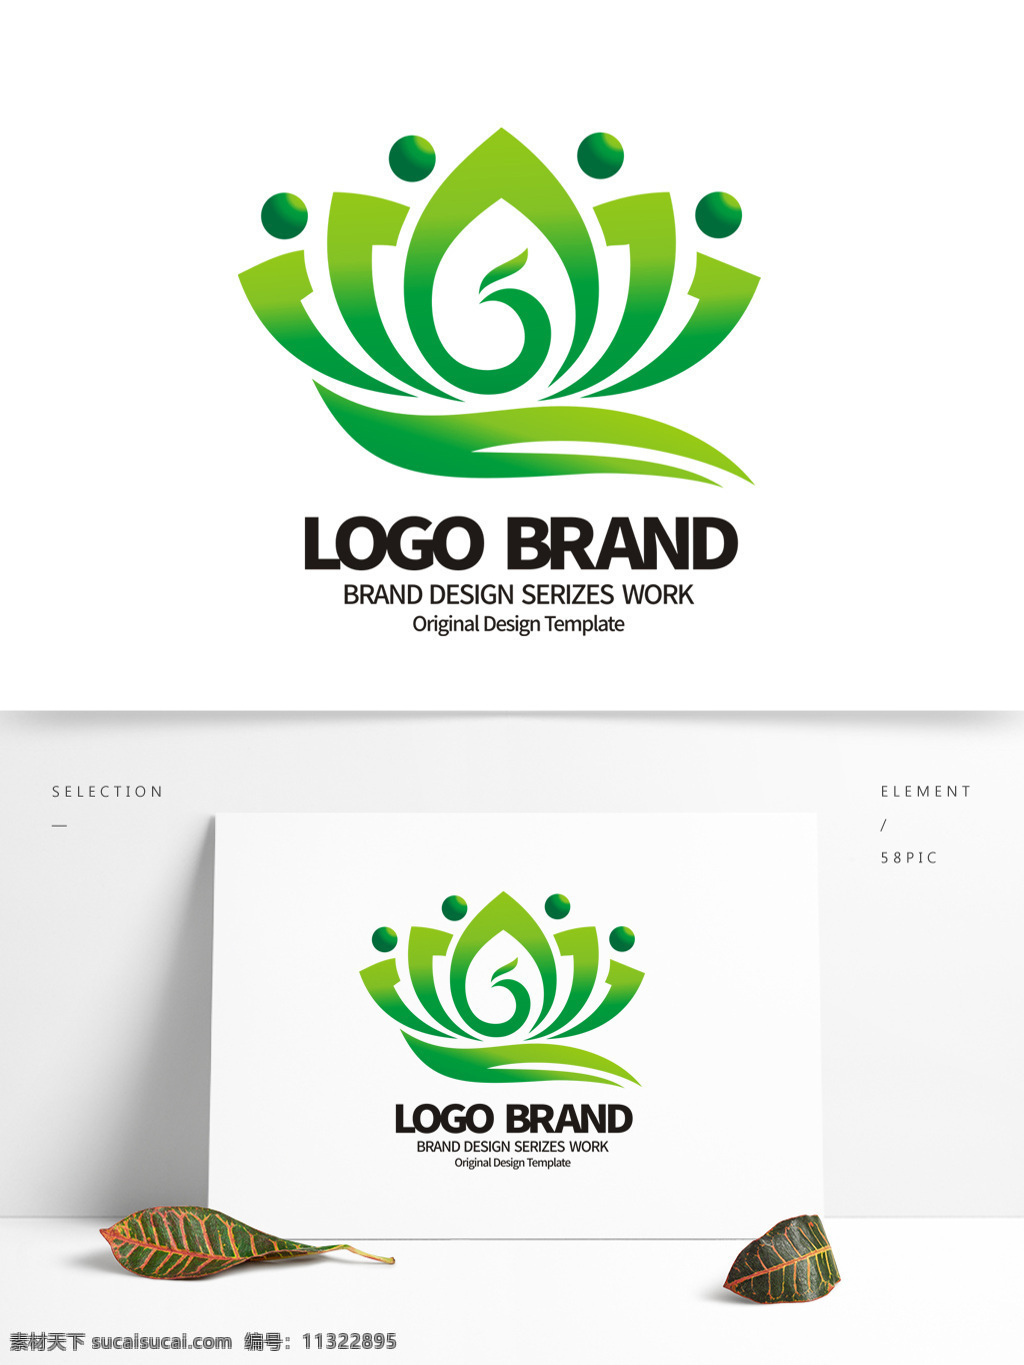 创意 绿色 荷花 w 字母 公司 logo 标志设计 服饰图标 a 标志 服饰标志 公司标志设计 企业 会徽标志设计 企业标志设计